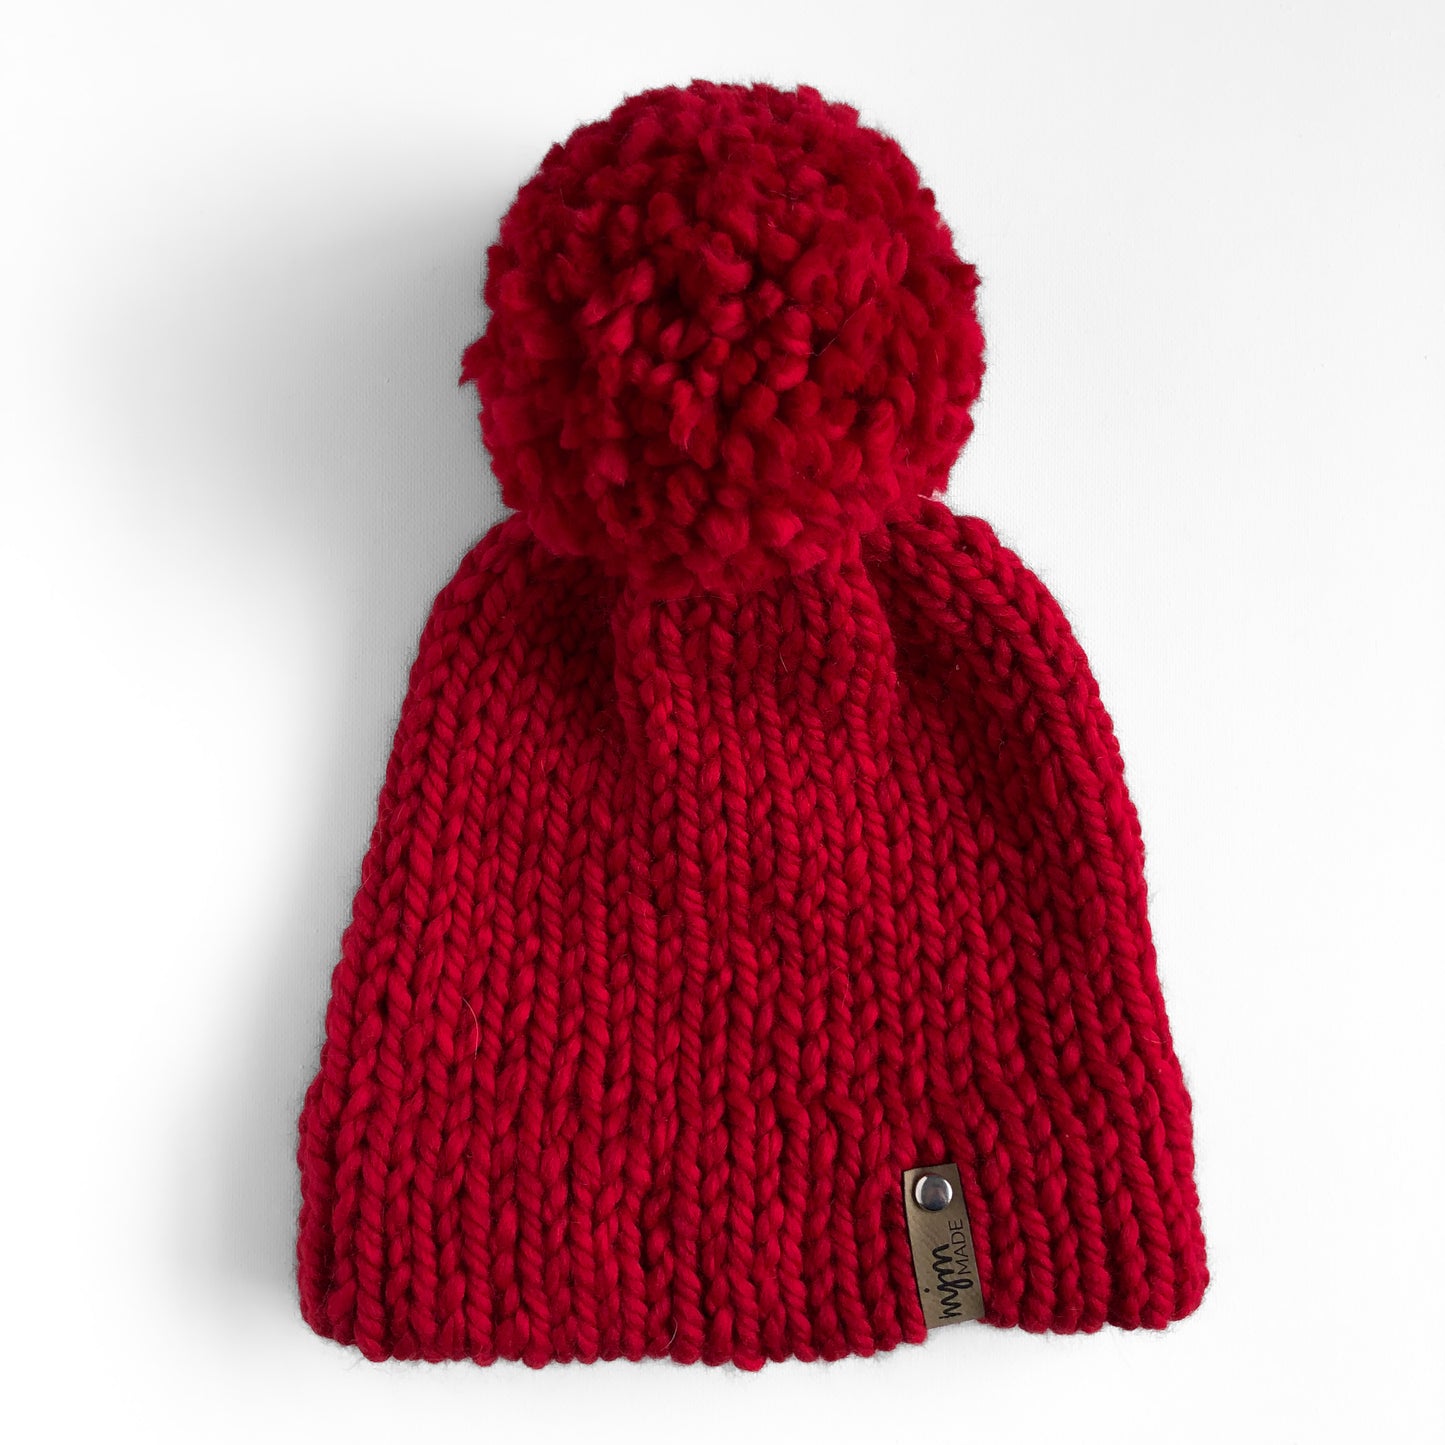 Bulky Hand Knit Pom Beanie - Bright Red